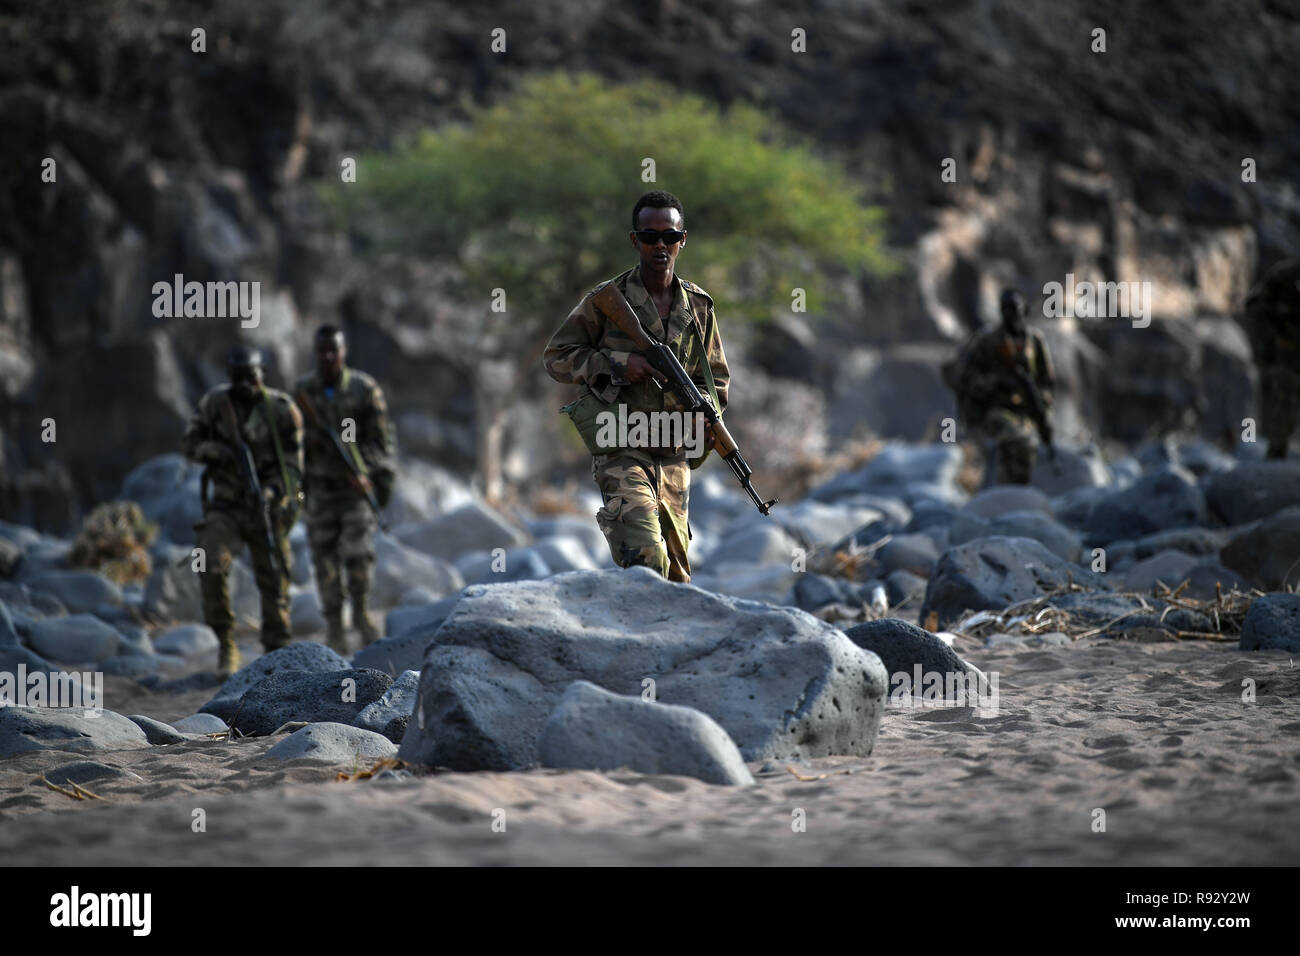 Soldados de Djibouti con el Batallón de Intervención Rápida durante la táctica de infantería y procedimientos de capacitación impartidos por las fuerzas estadounidenses el 18 de diciembre de 2018, cerca de la ciudad de Djibouti, Djibouti. Foto de stock